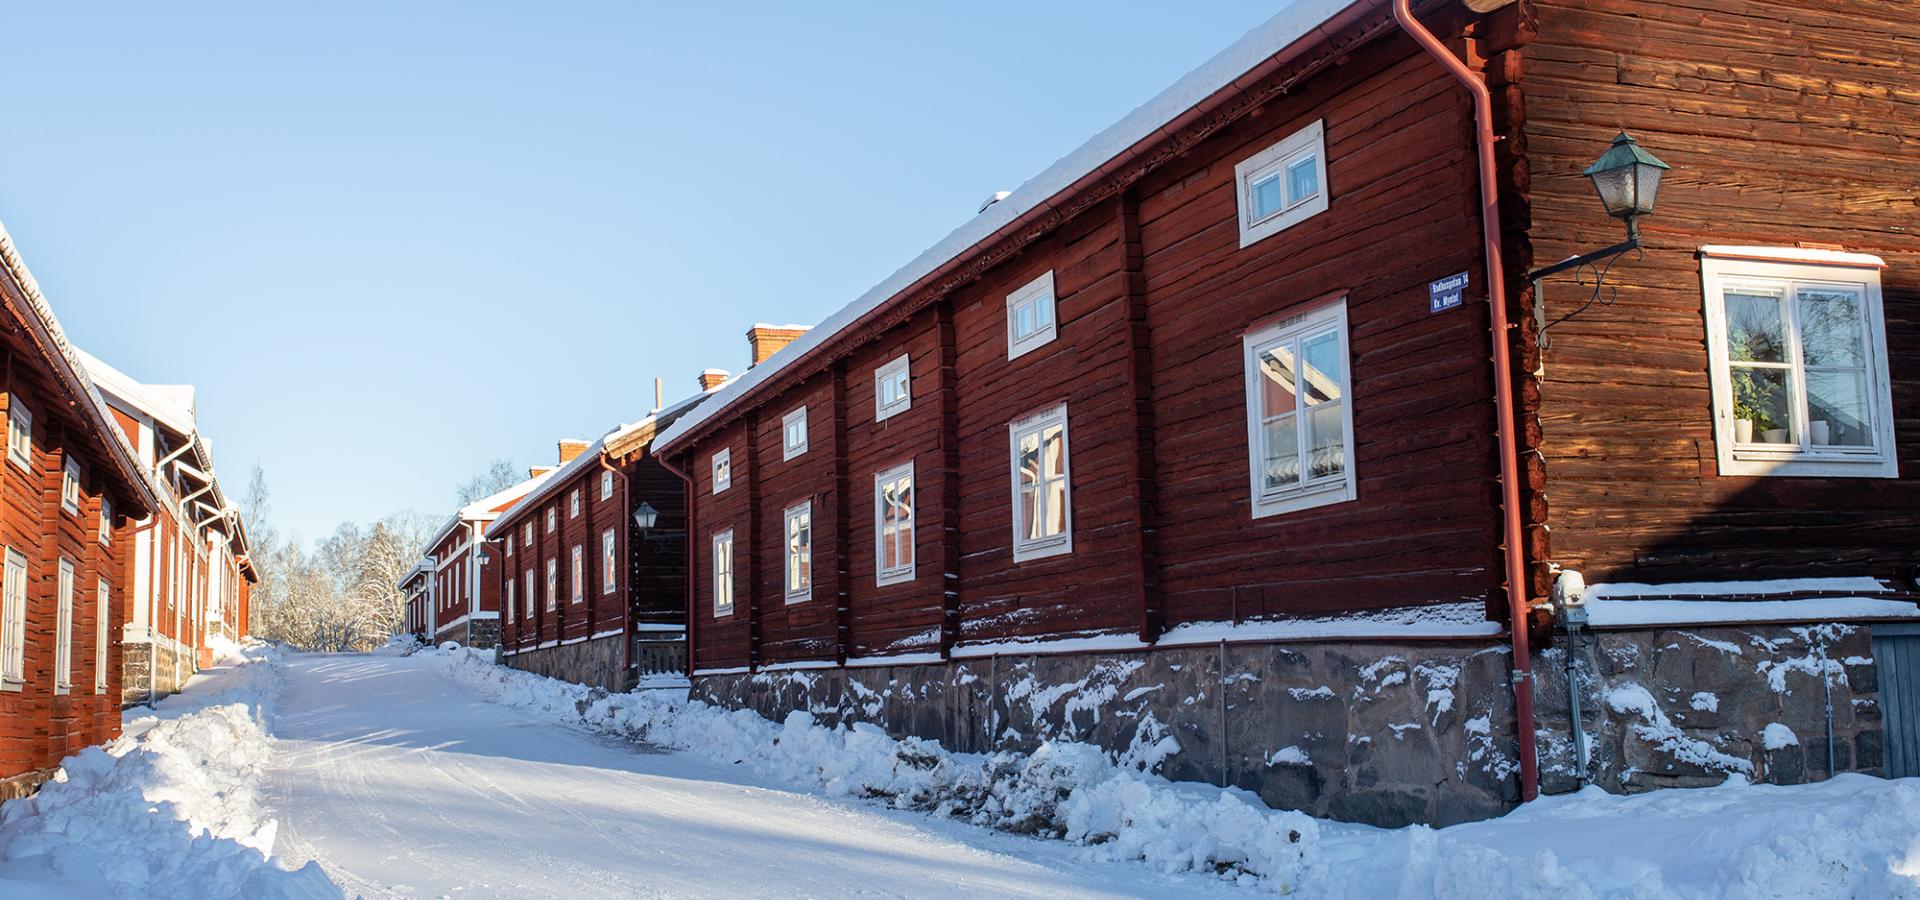 Vintrig gata i Gamla Byn Avesta, röda hus på stengrund med snö på taken.